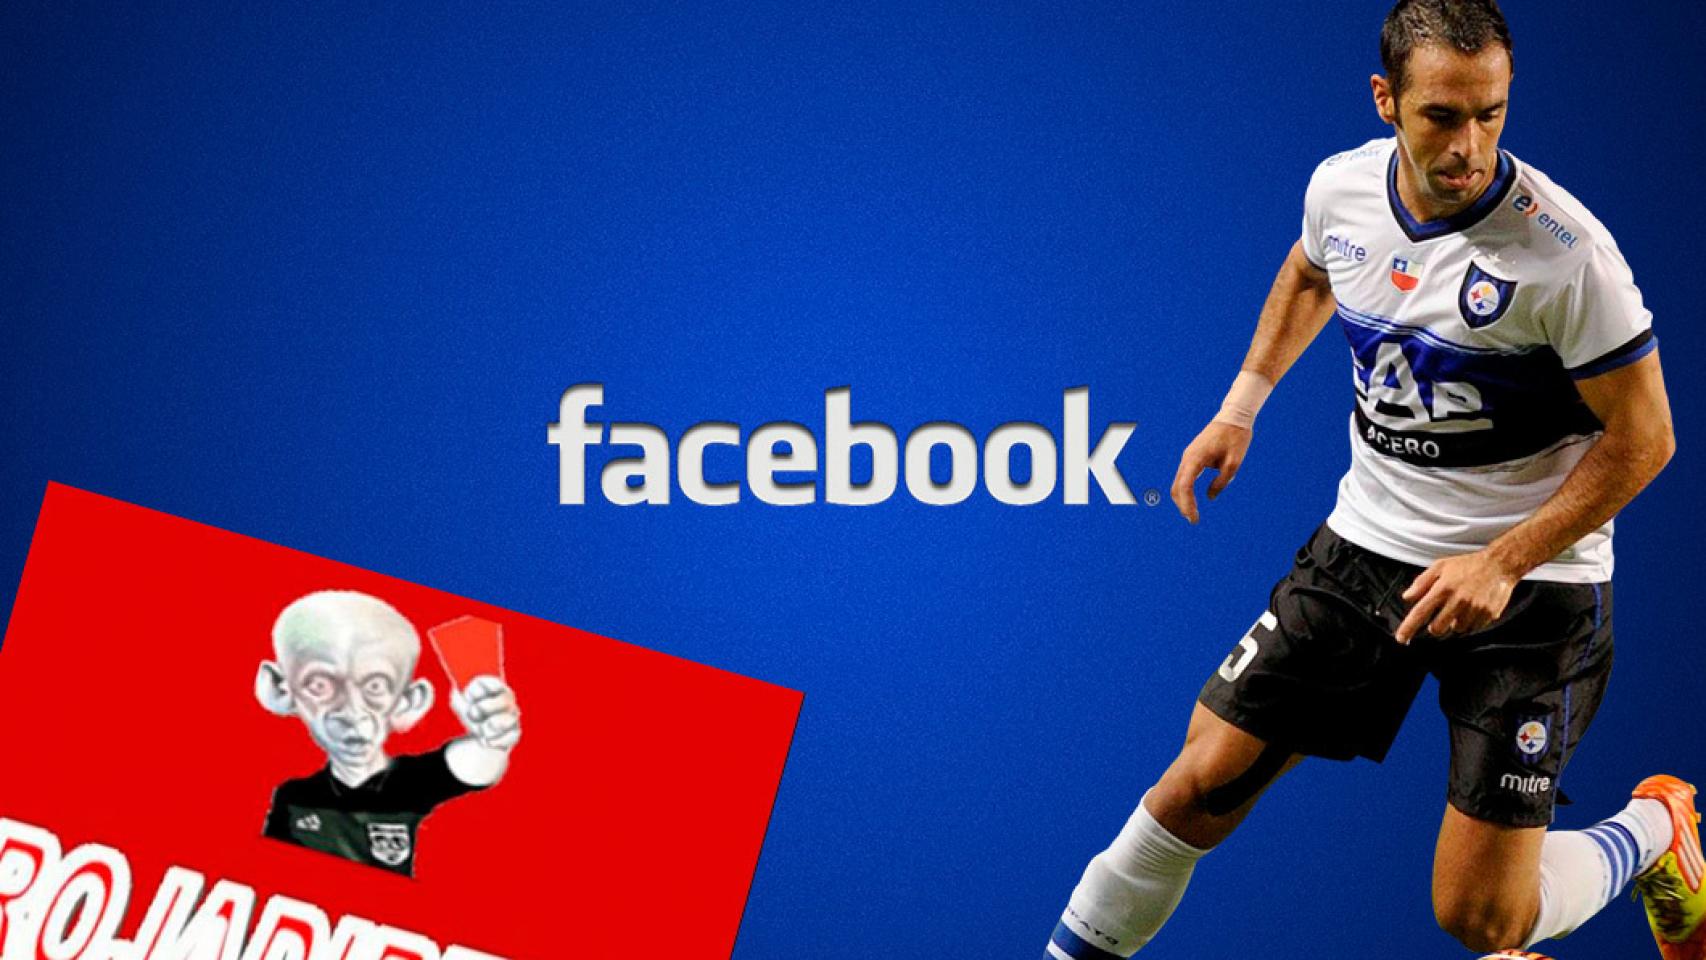 Facebook es el nuevo RojaDirecta fútbol pirata aprovechando los vídeos en directo